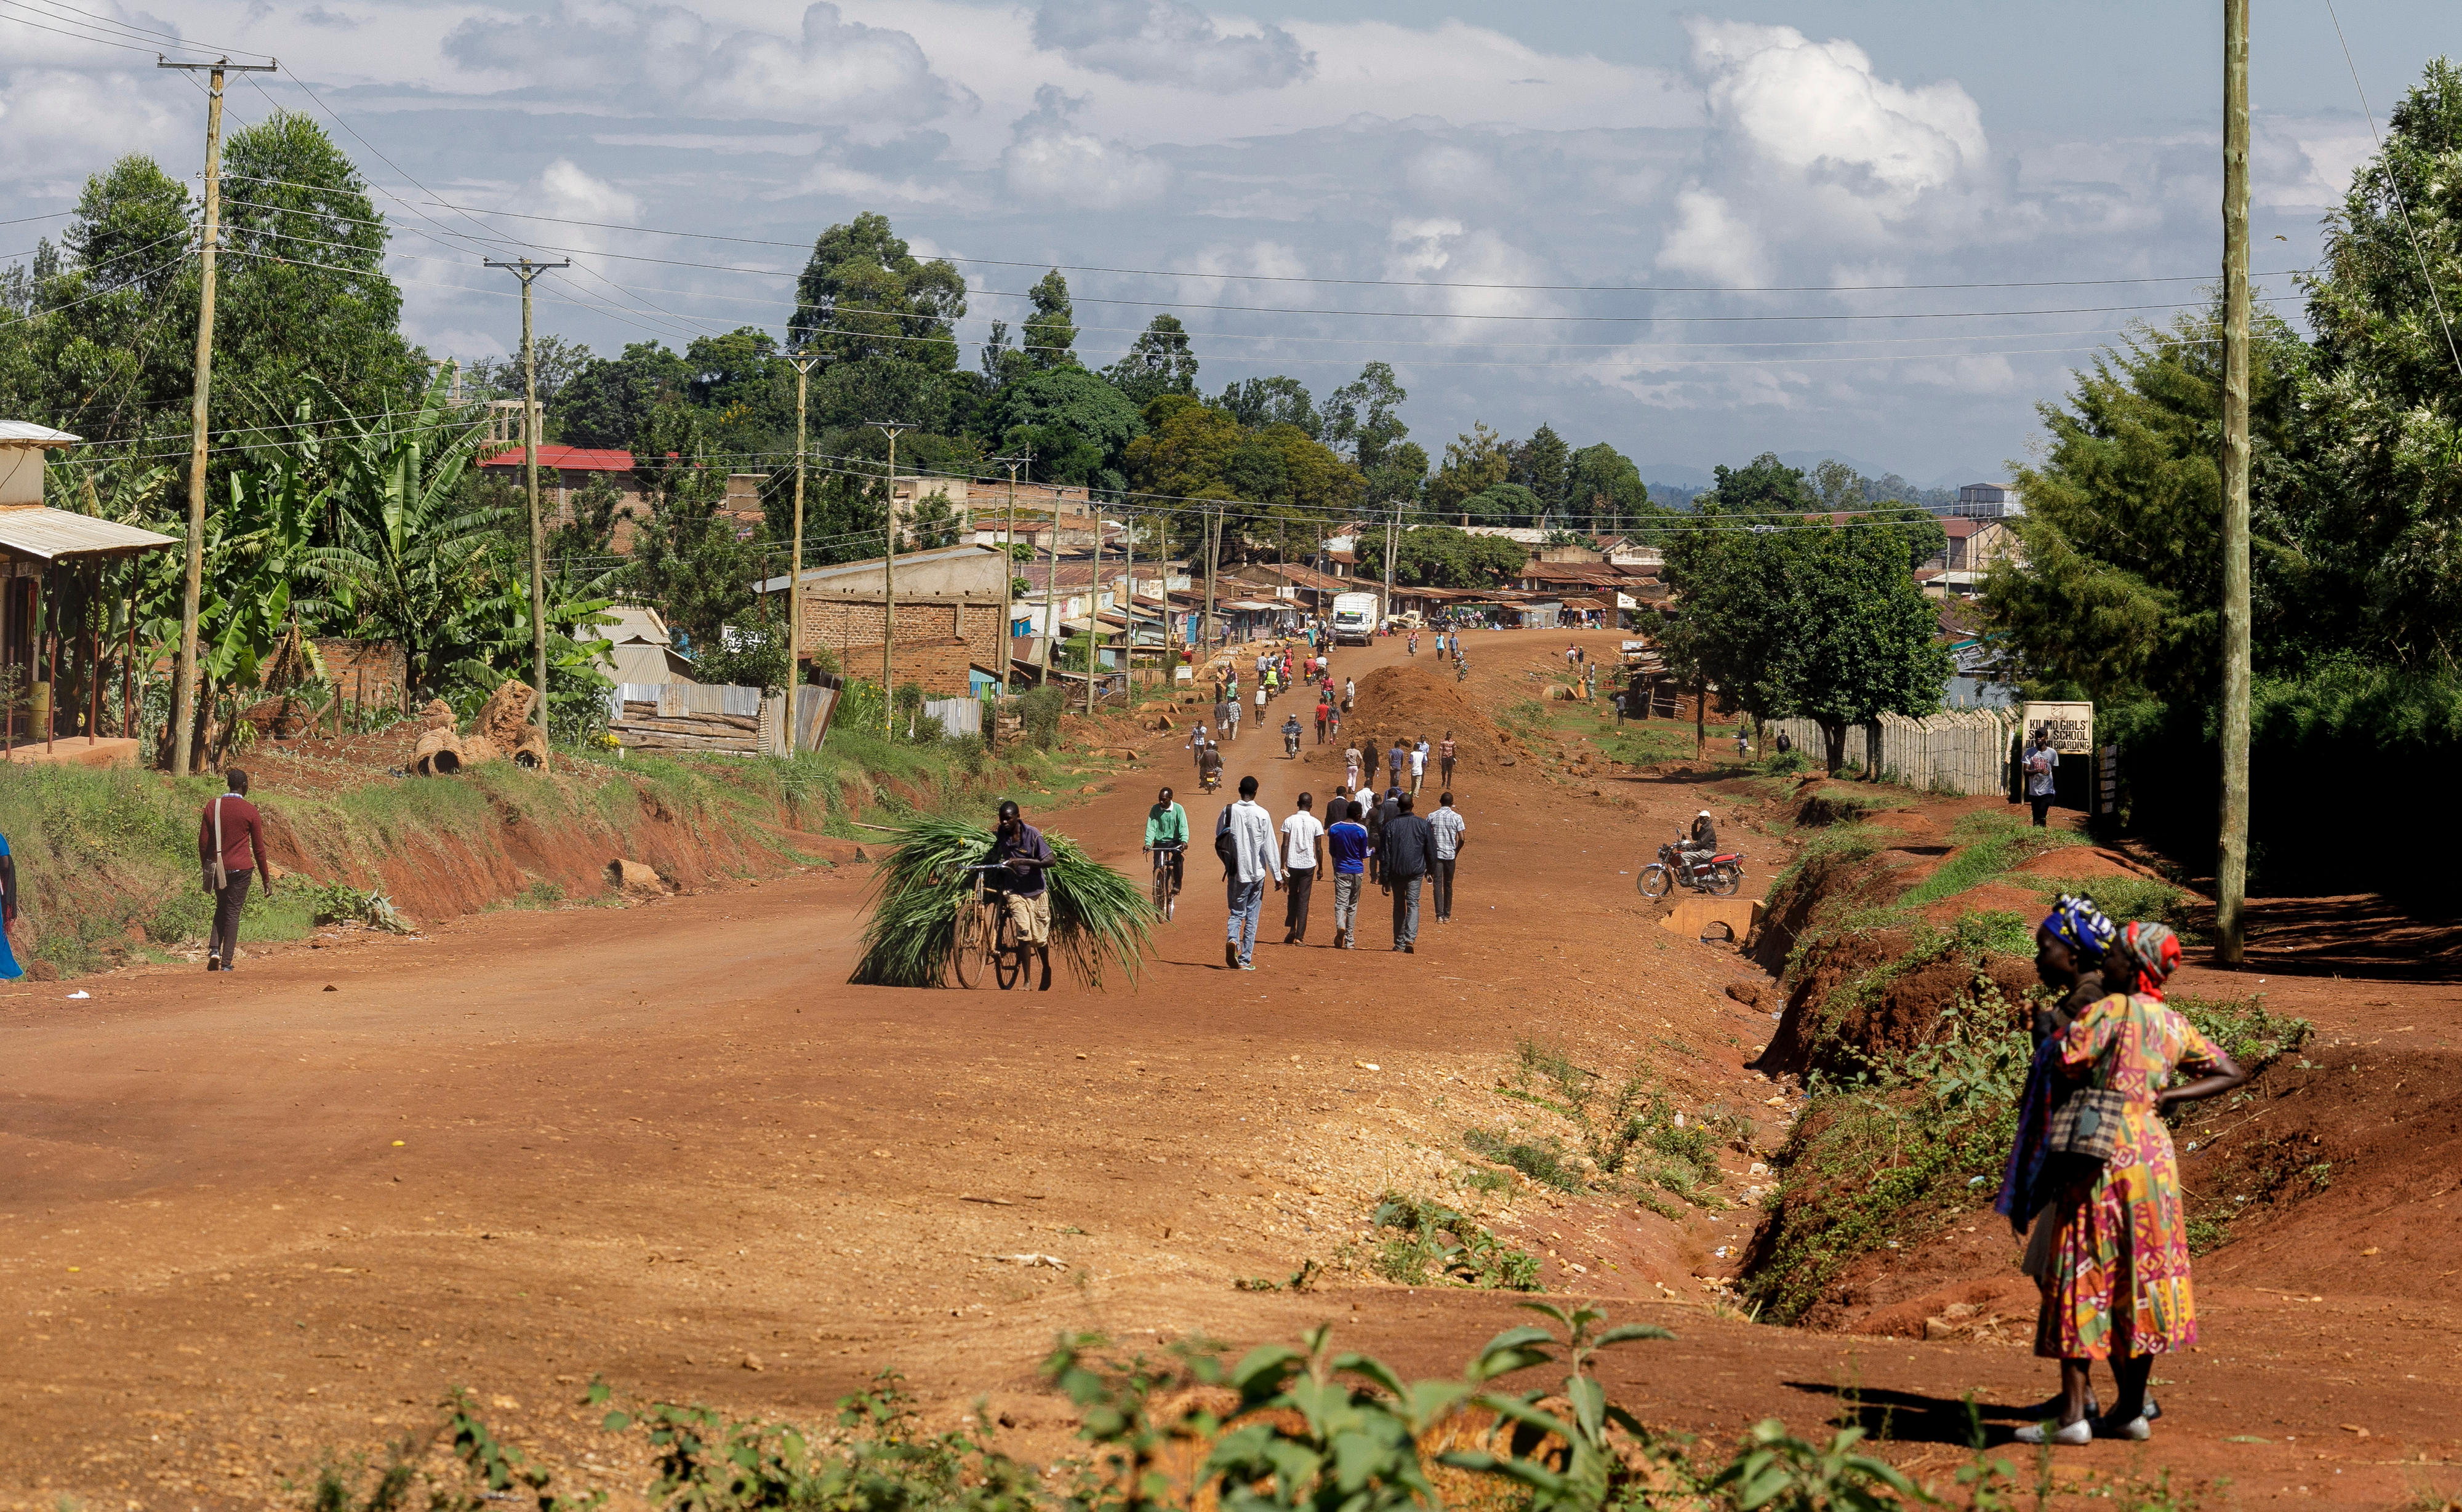 Rural road in Kenya